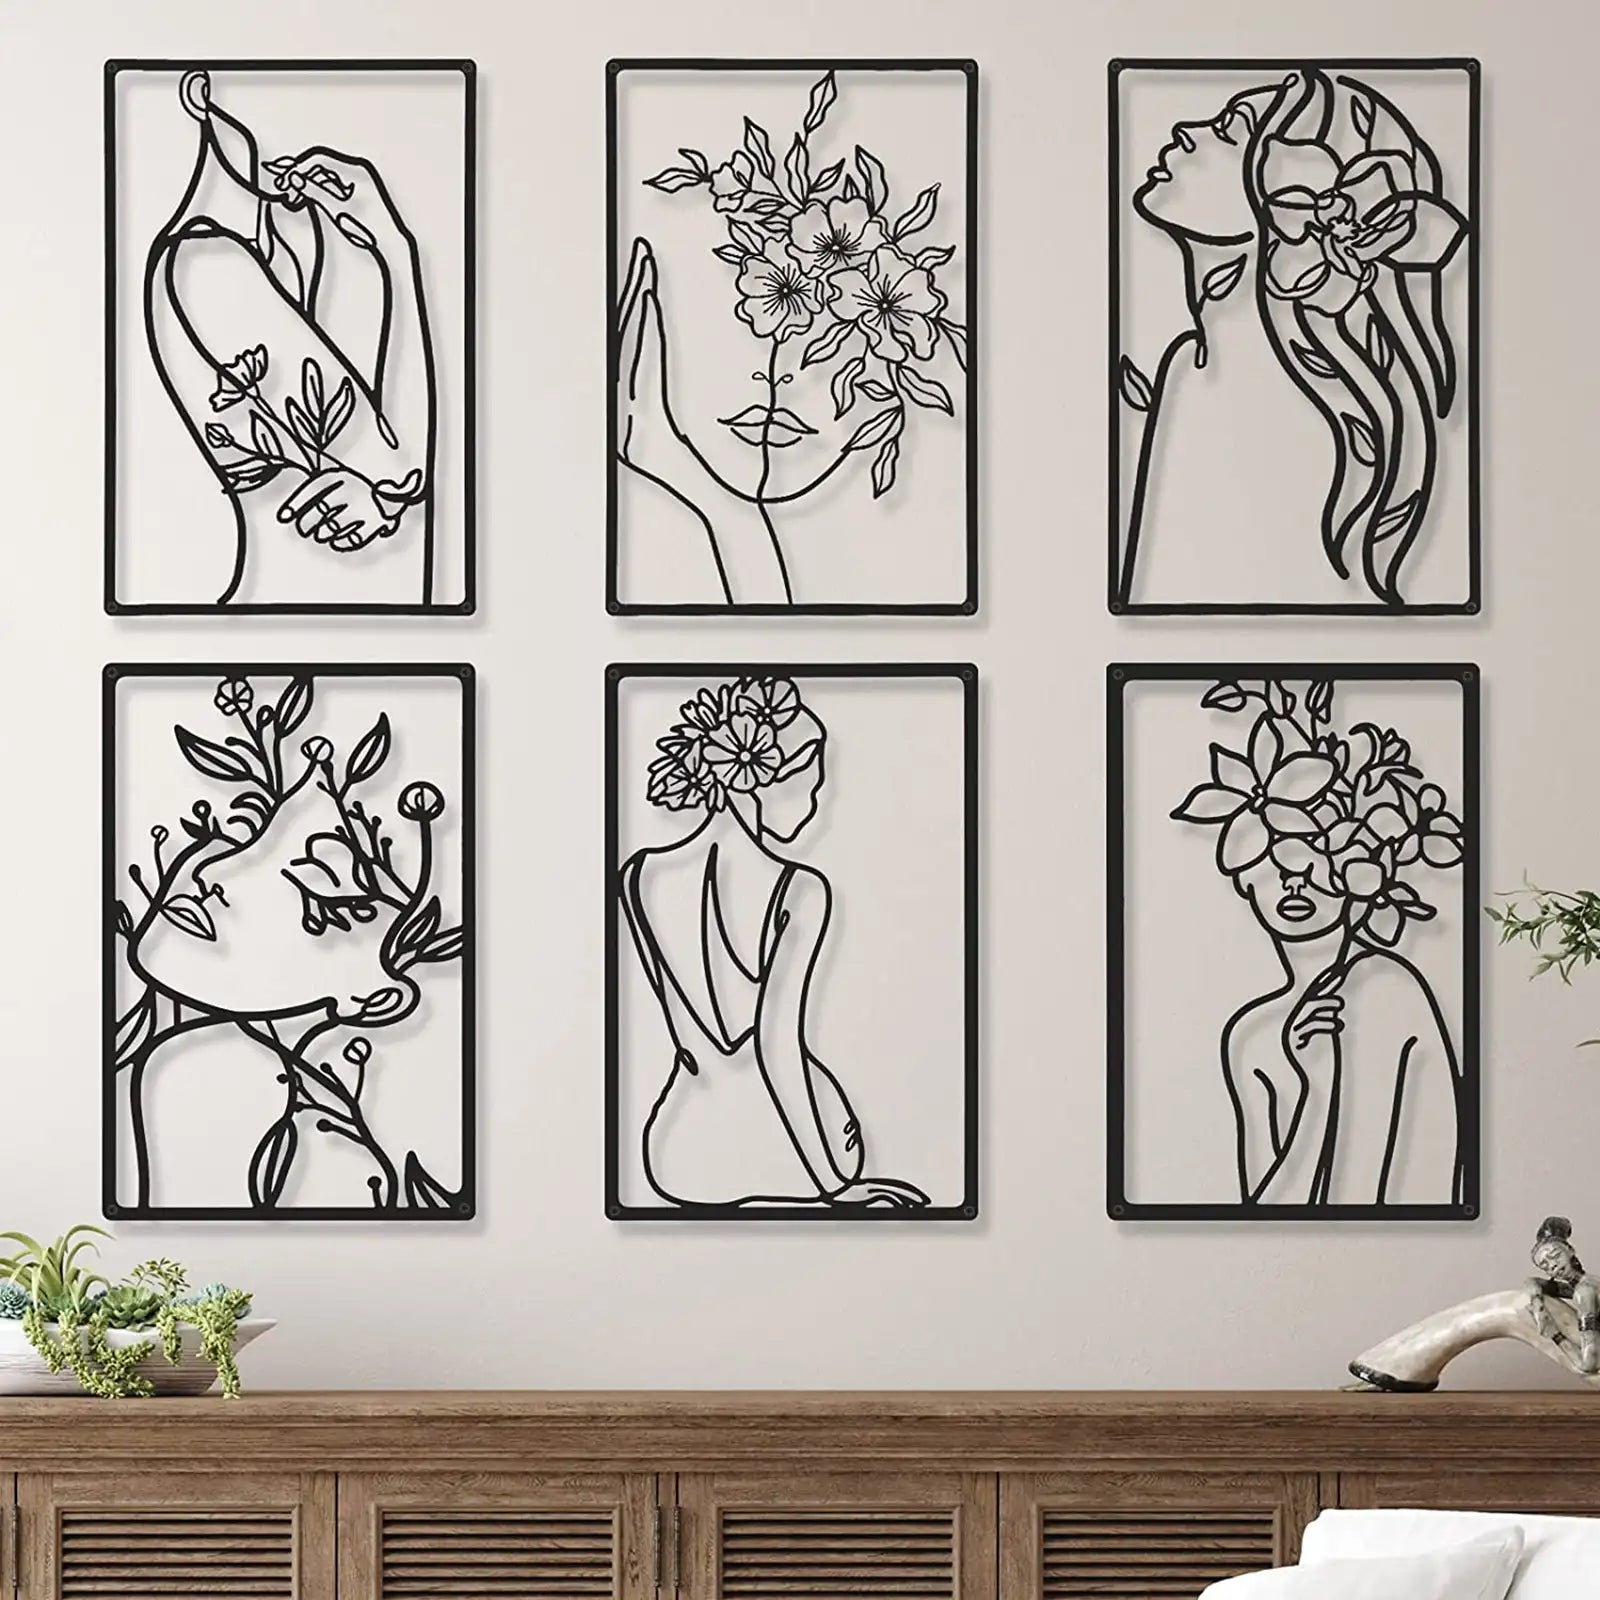 6 piezas de metal negro decoración de pared moderno minimalista abstracto mujer arte de pared estético femenino escultura de pared dibujo lineal arte colgante decoración minimalista para cocina, dormitorio, baño, sala de estar decoración de pared 